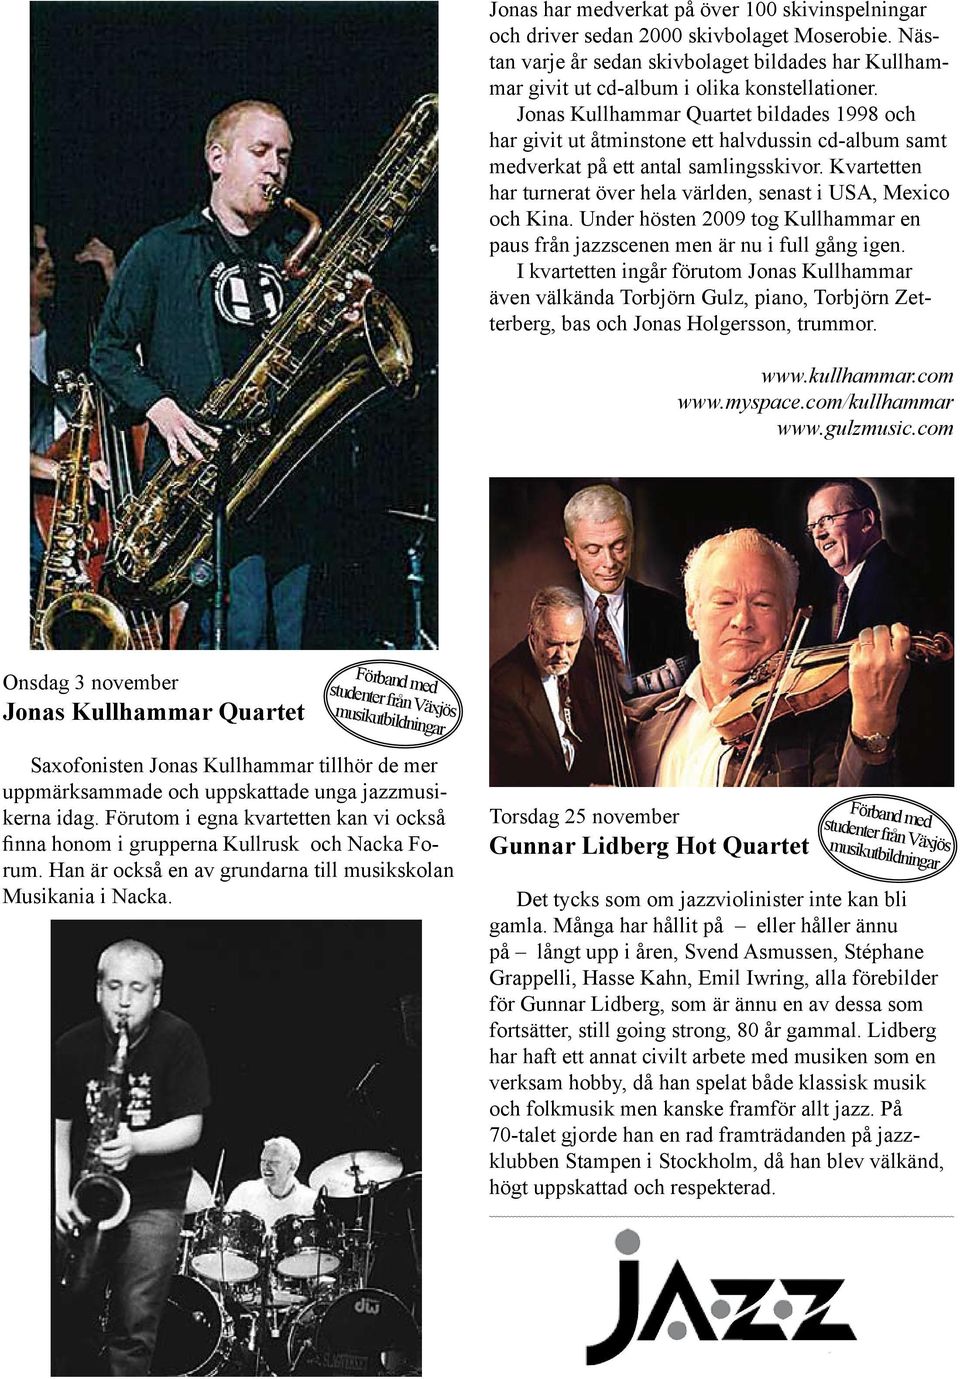 Kvartetten har turnerat över hela världen, senast i USA, Mexico och Kina. Under hösten 2009 tog Kullhammar en paus från jazzscenen men är nu i full gång igen.